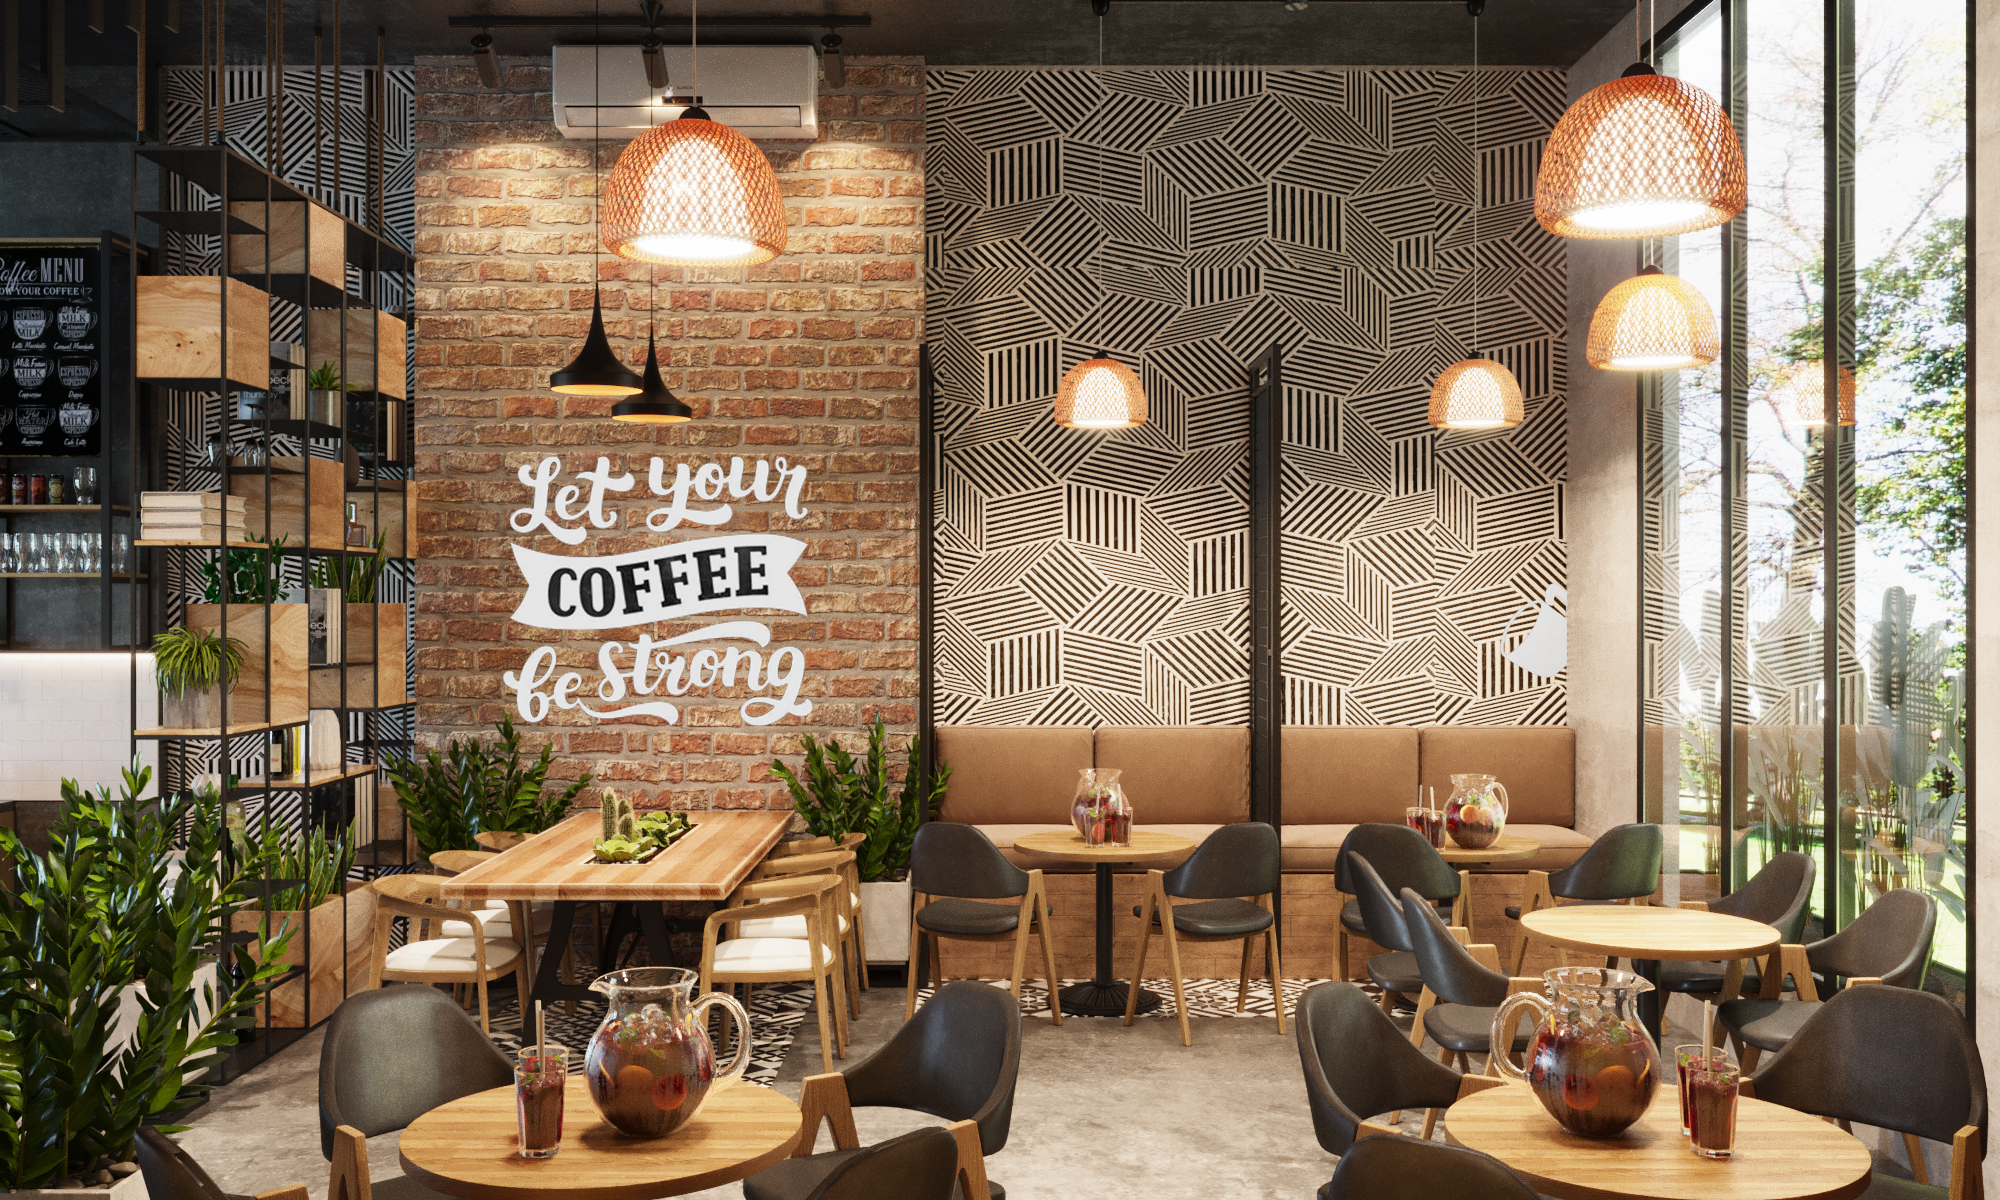 Thiết kế nội thất Cafe tại Long An Rum coffee - Bến Lức 1610860965 3